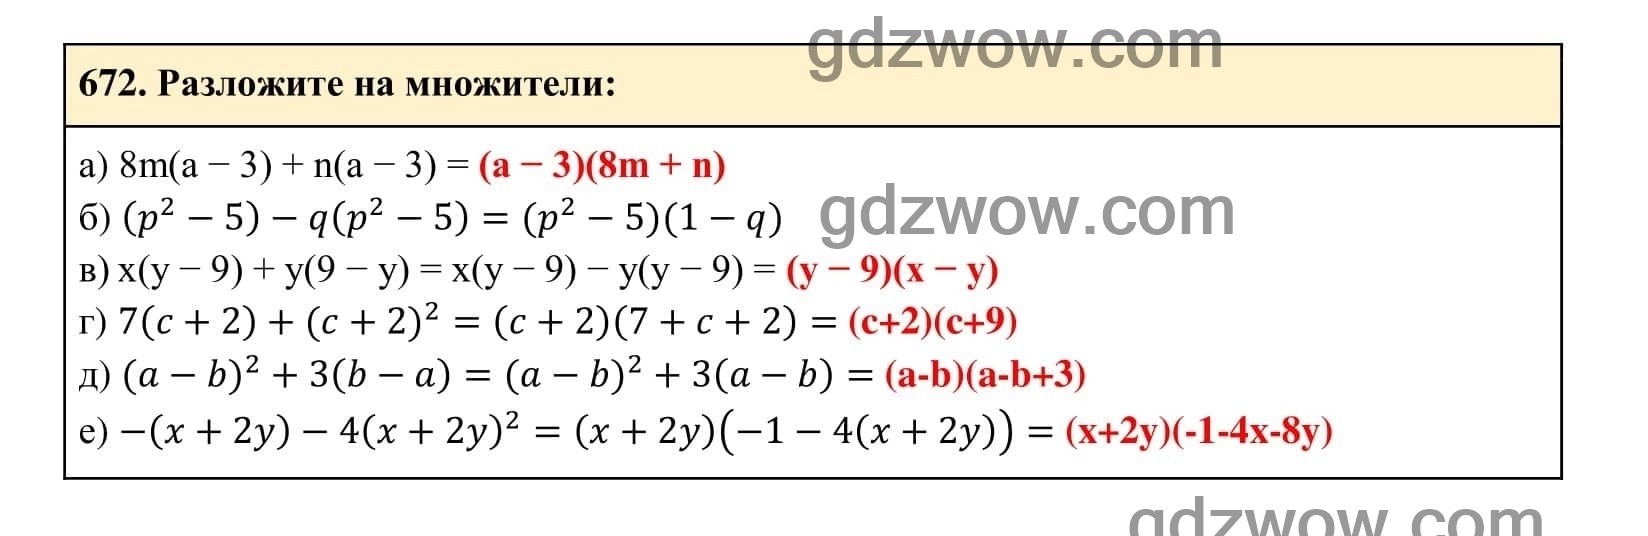 Упражнение 672 - ГДЗ по Алгебре 7 класс Учебник Макарычев (решебник) - GDZwow